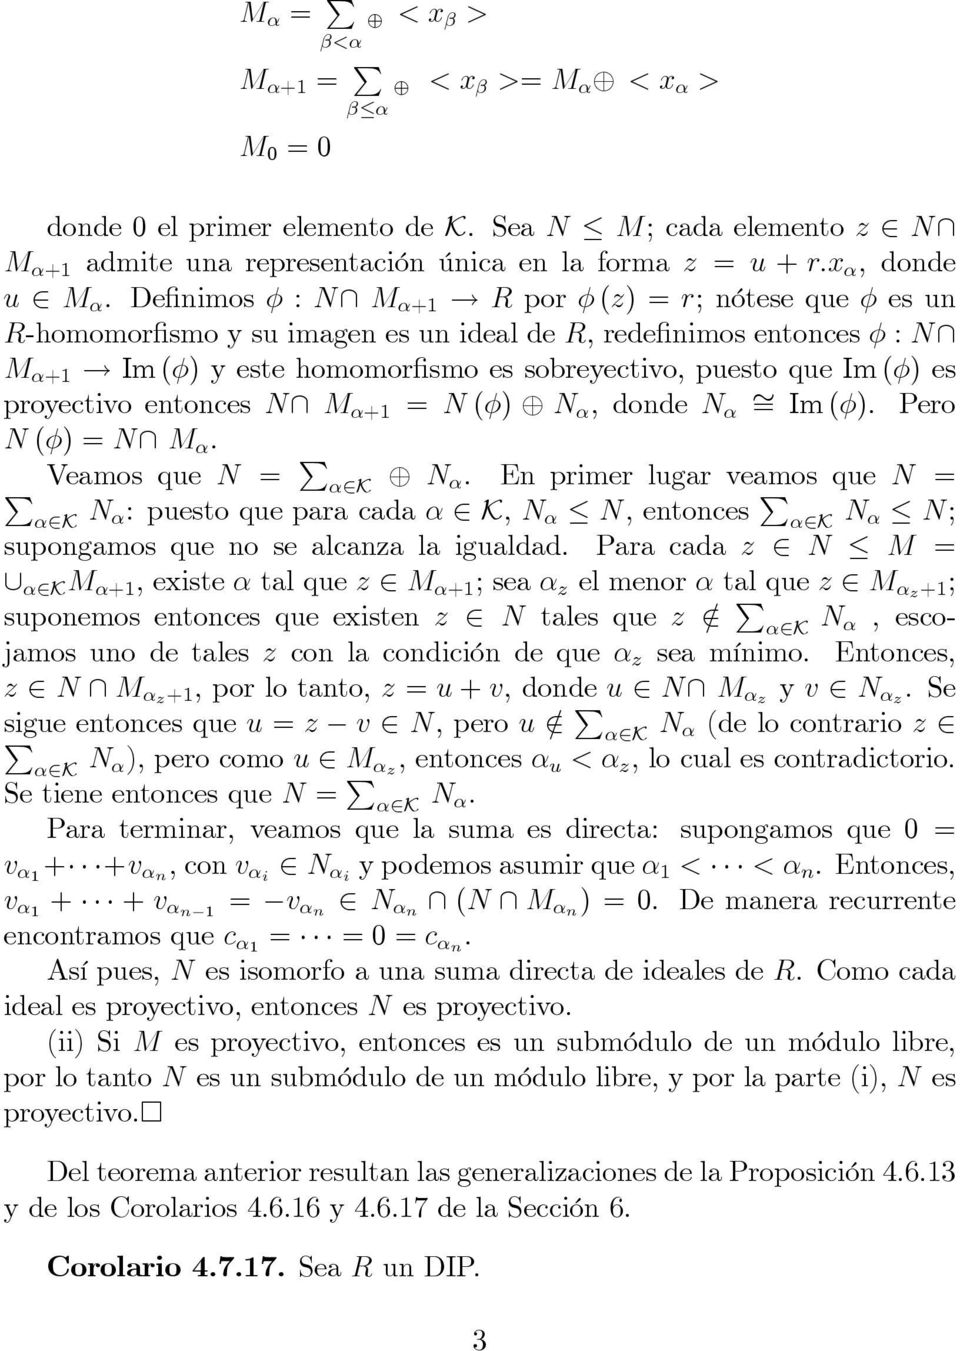 Im () y este homomor smo es sobreyectivo, puesto que Im () es proyectivo entonces N\ M +1 = N () N, donde N = Im (). ero N () = N\ M. Veamos que N = 2K N.